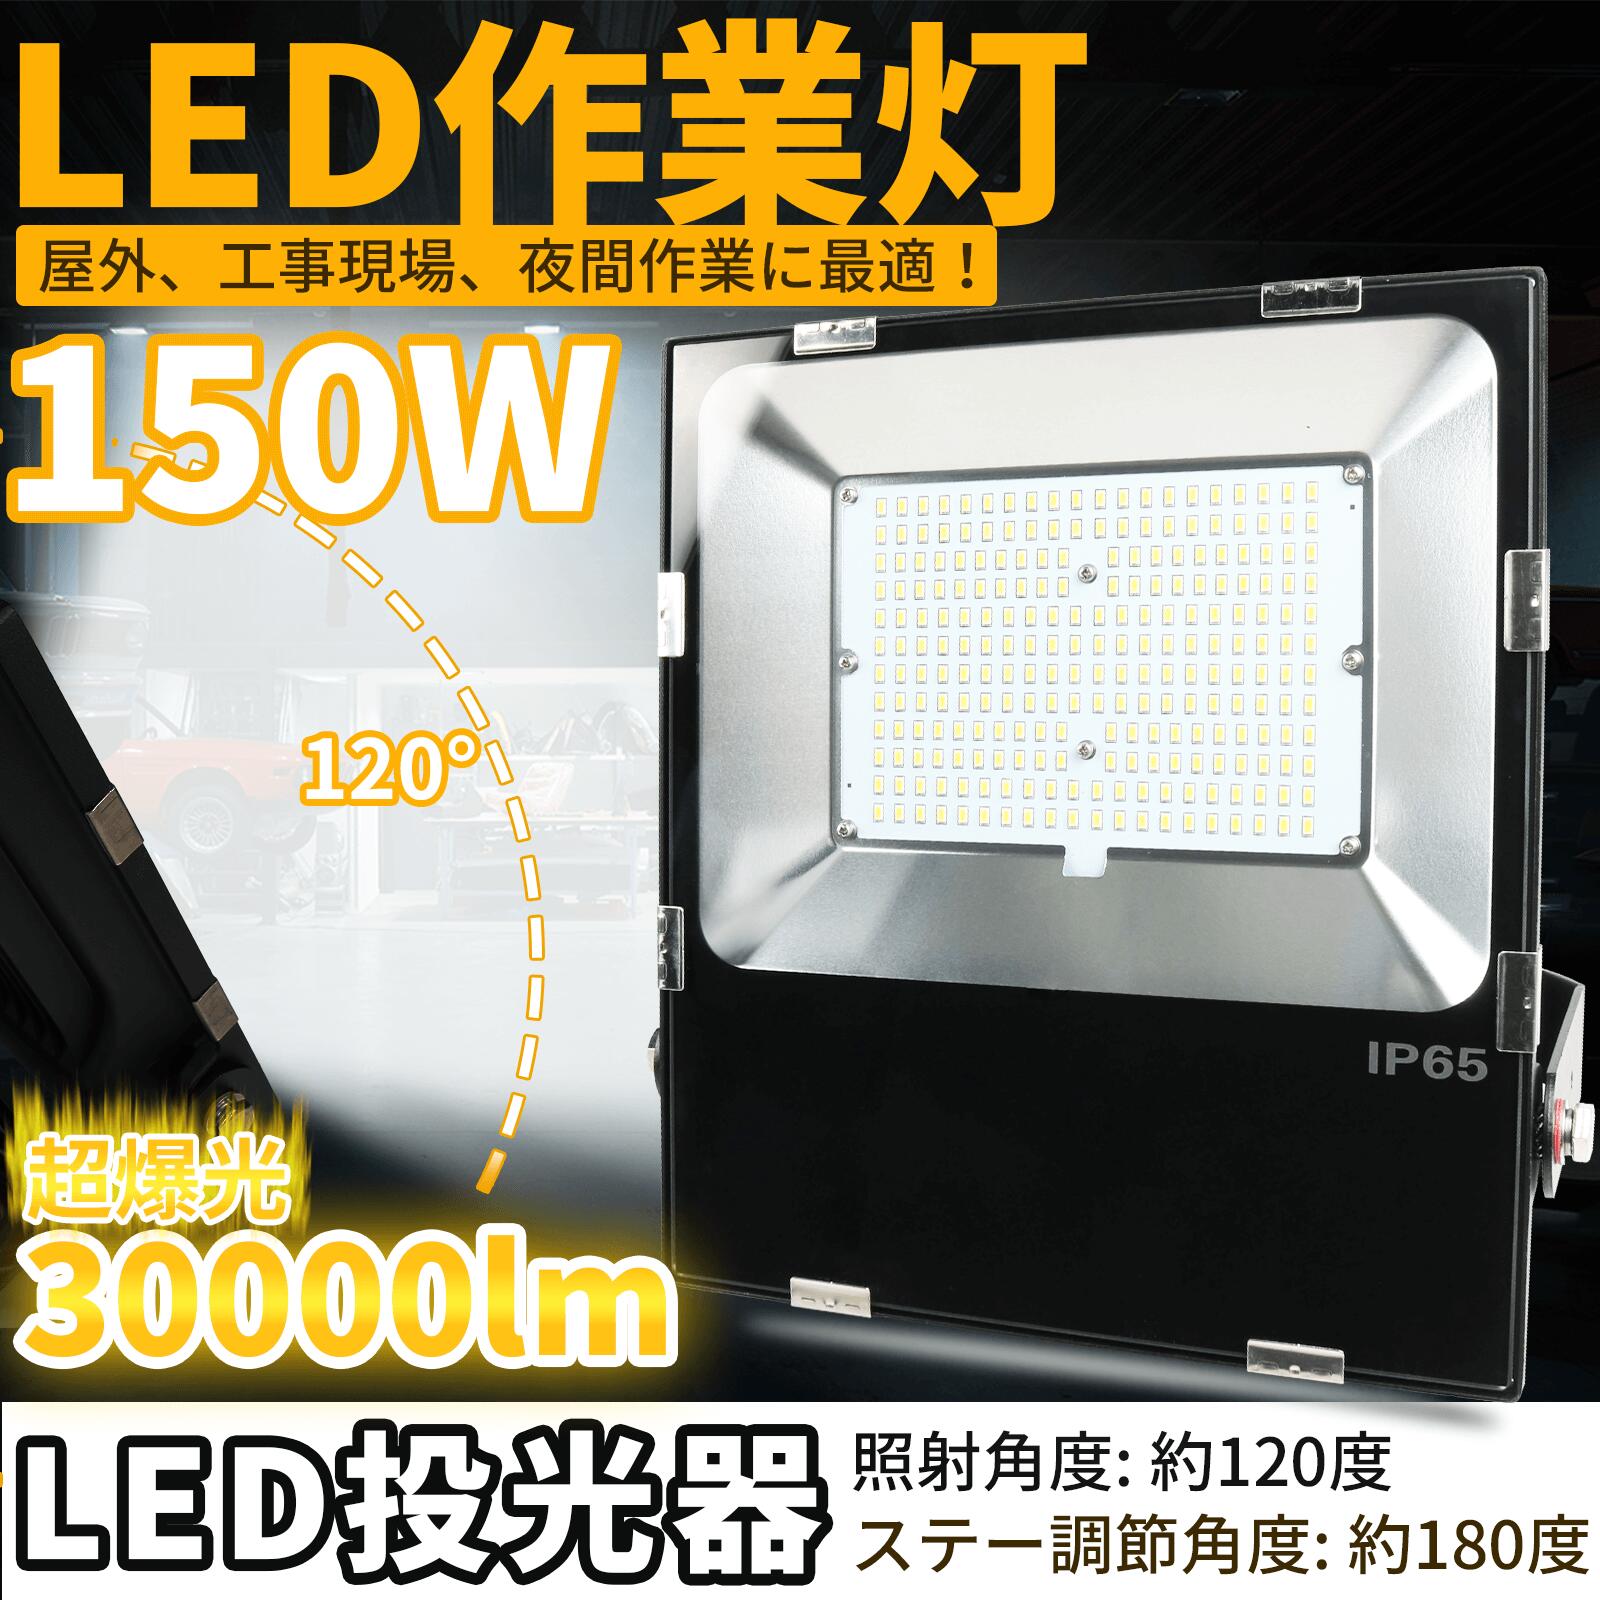  ƗpCg  led O led ledCg Ɩ Cg led Ɠ led led 150w 30000lm q Ɩ [NCg led ΂ߓVpƖ Op Ɩ H pƖ O 